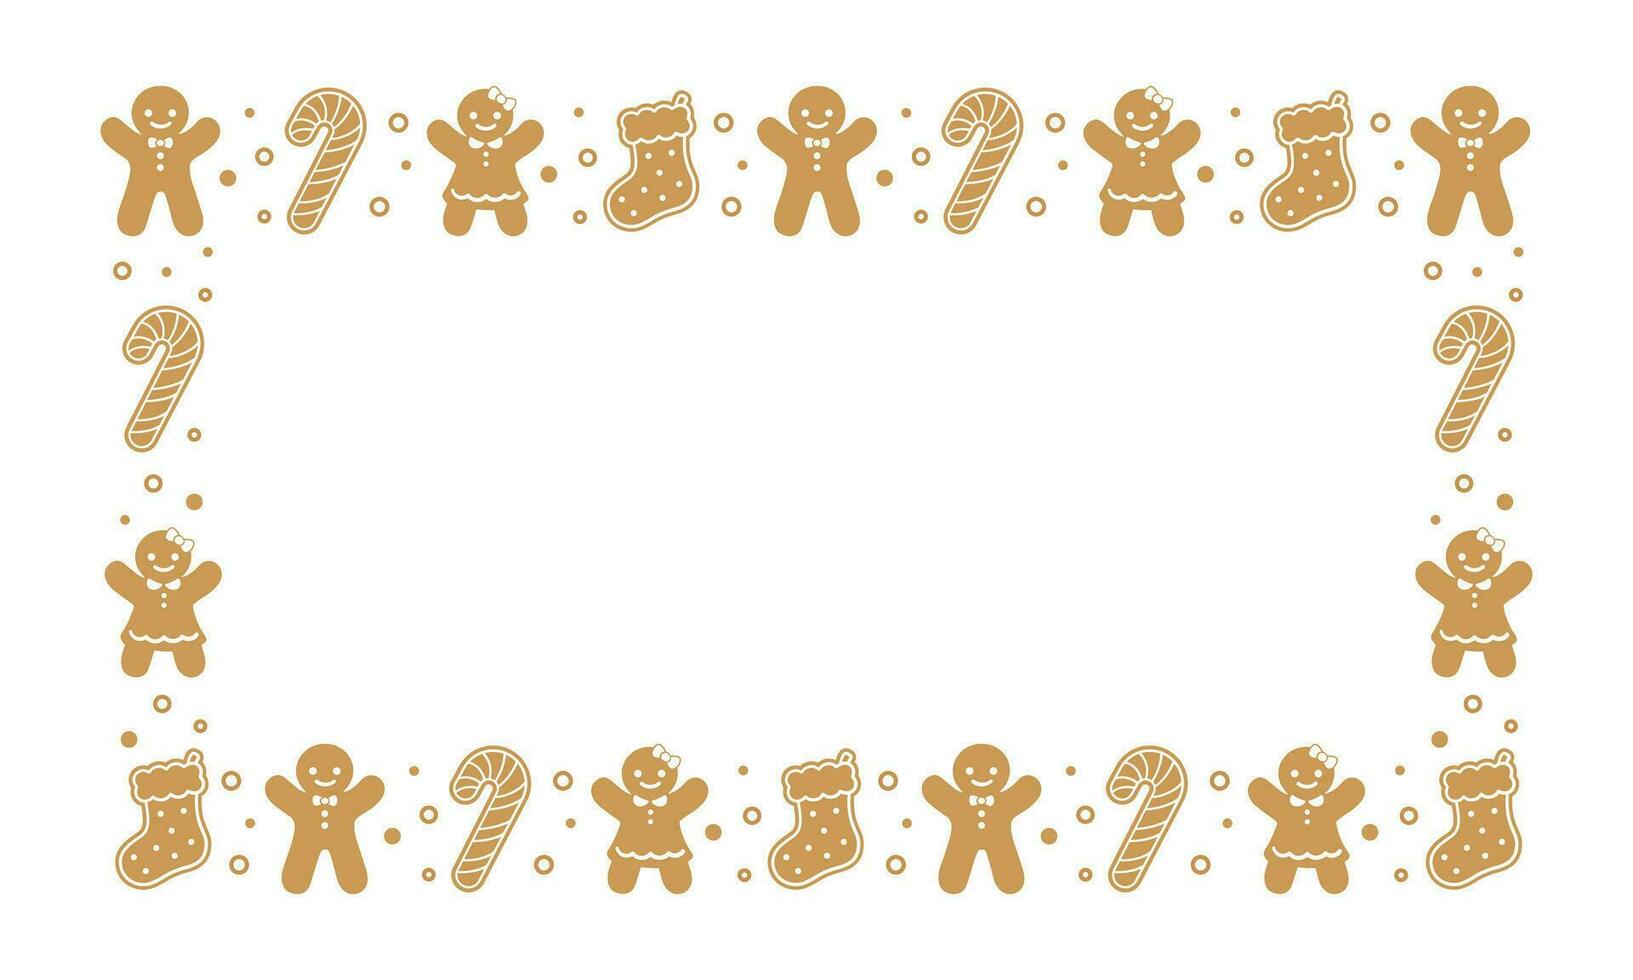 rectángulo pan de jengibre galletas marco borde, Navidad invierno fiesta gráficos. hecho en casa dulces patrón, tarjeta y social medios de comunicación enviar modelo en blanco antecedentes. aislado vector ilustración.